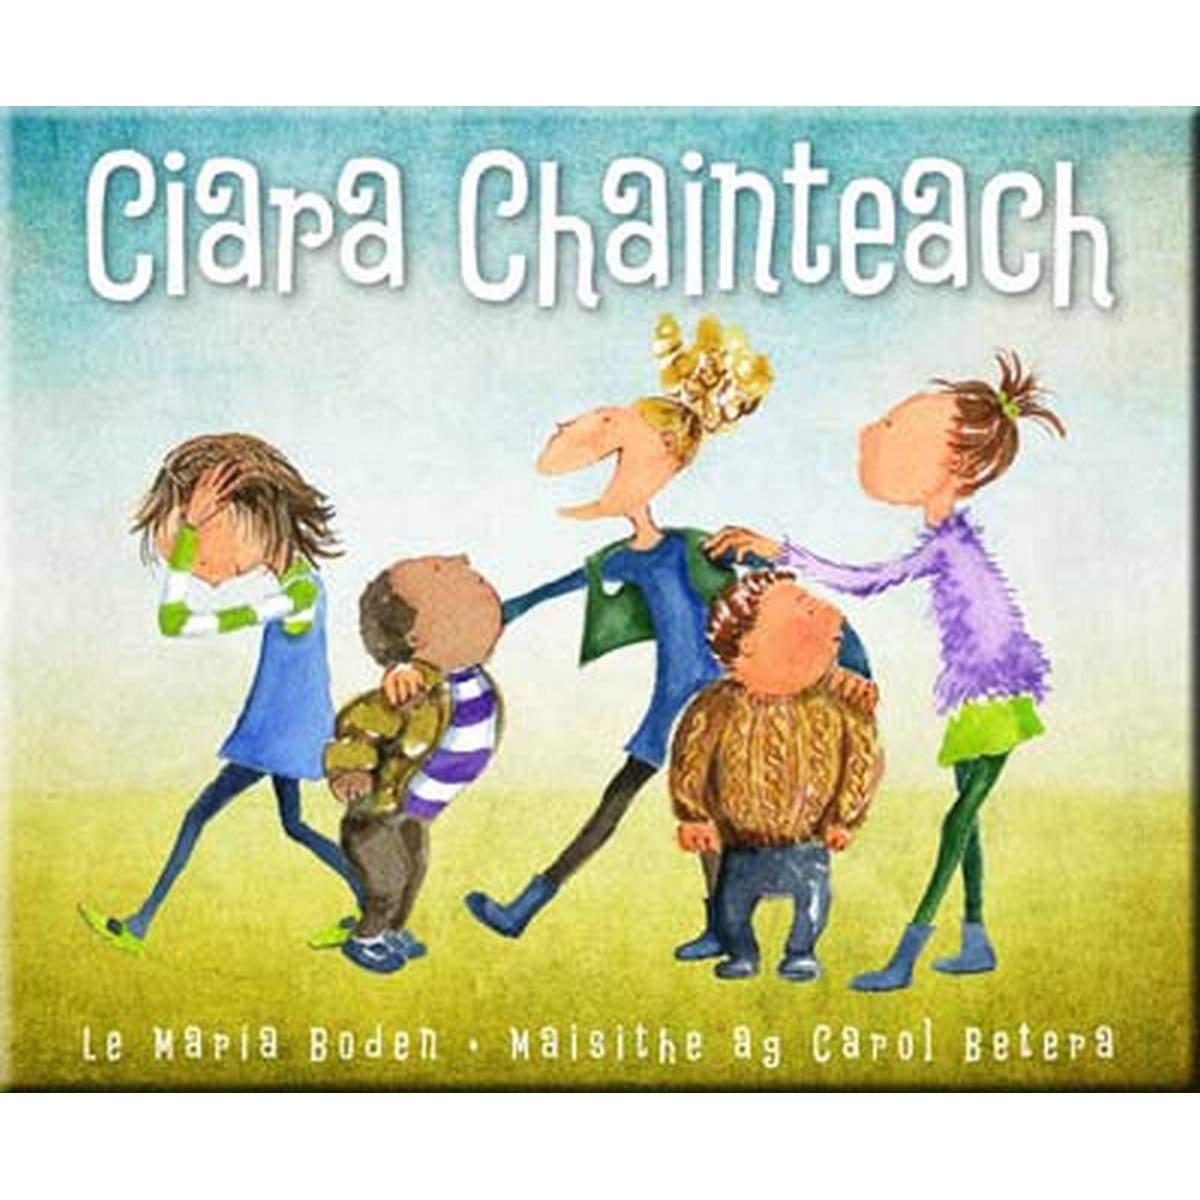 Ciara Chainteach